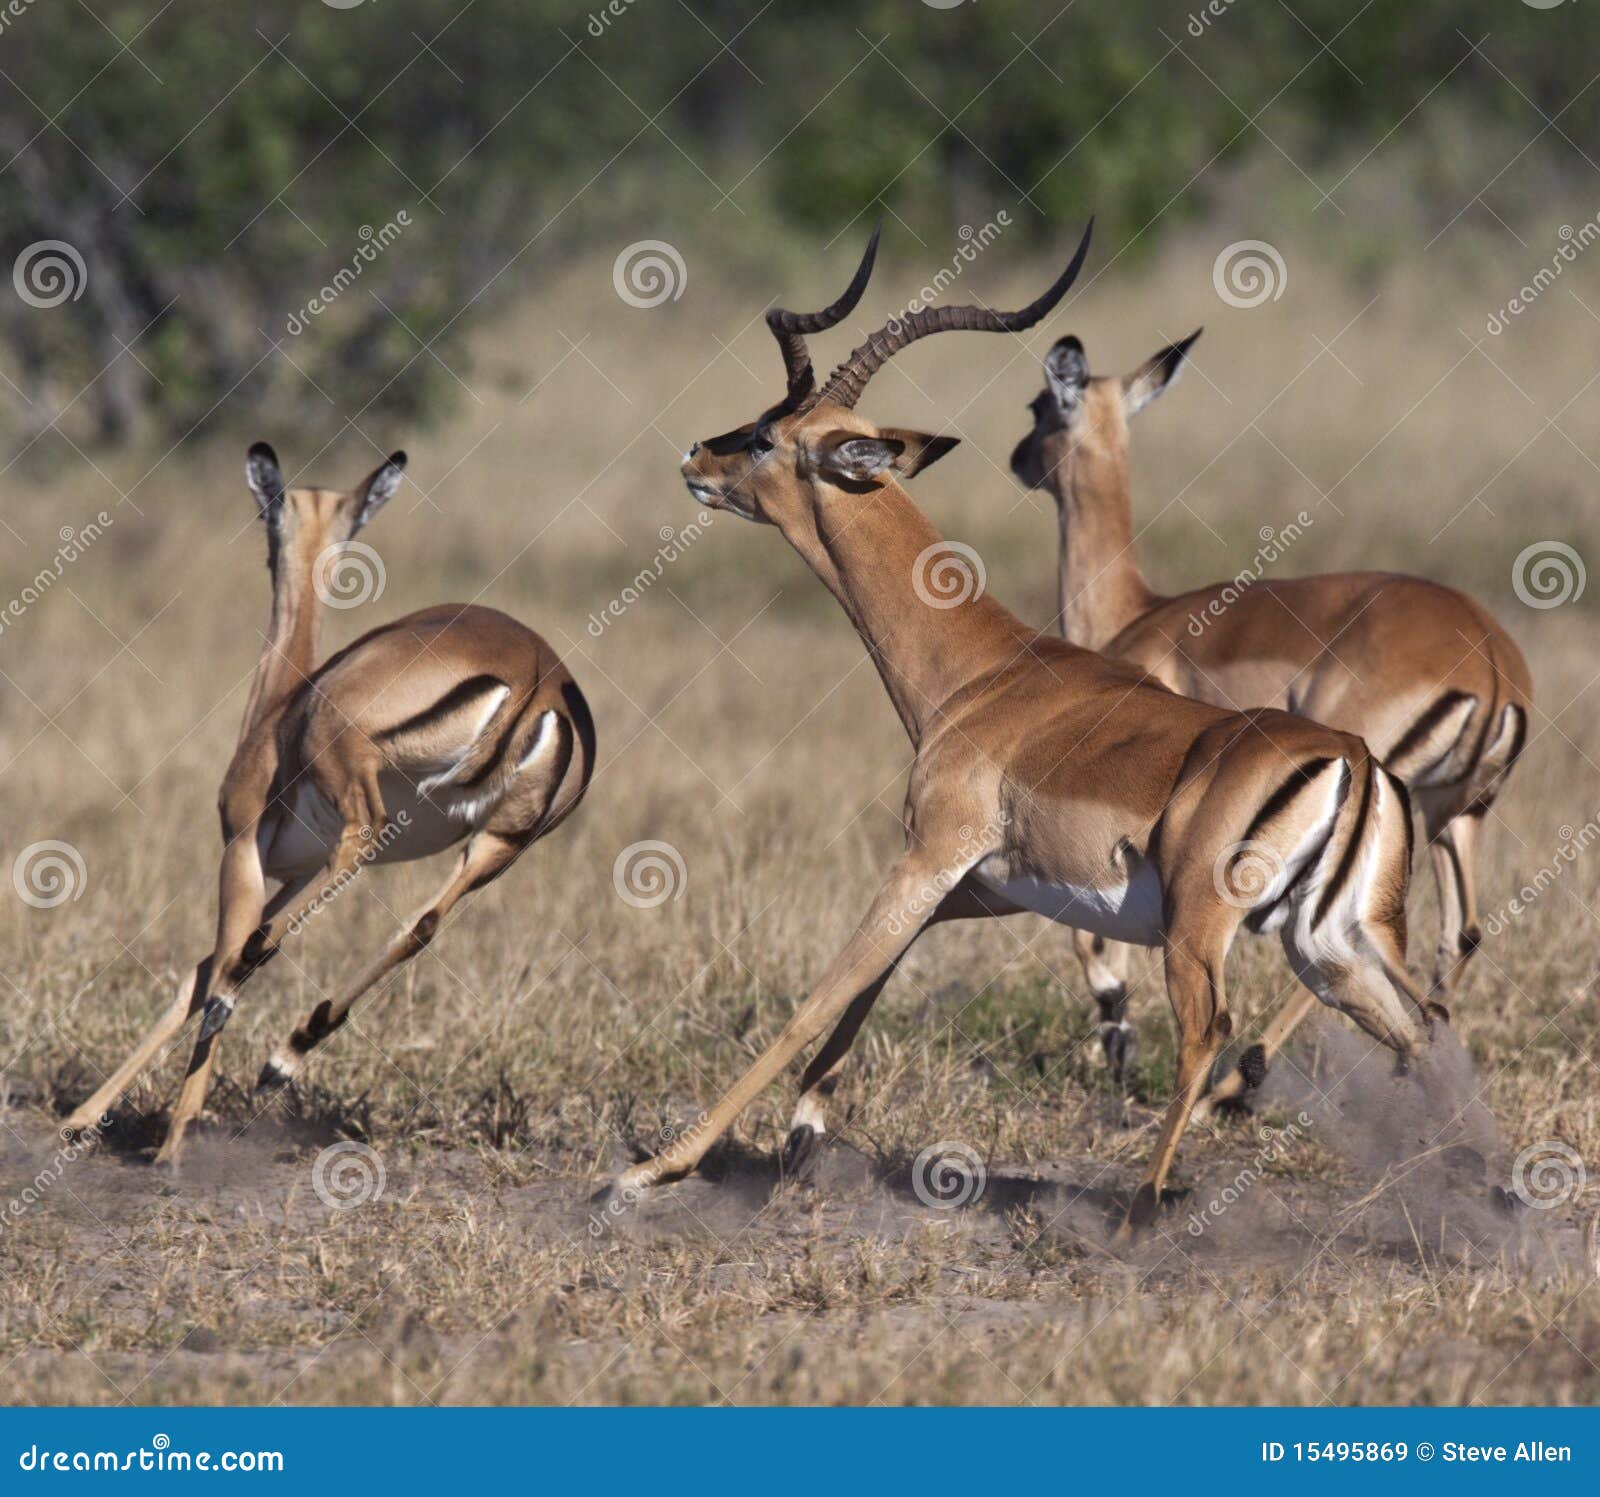 impala running - botswana